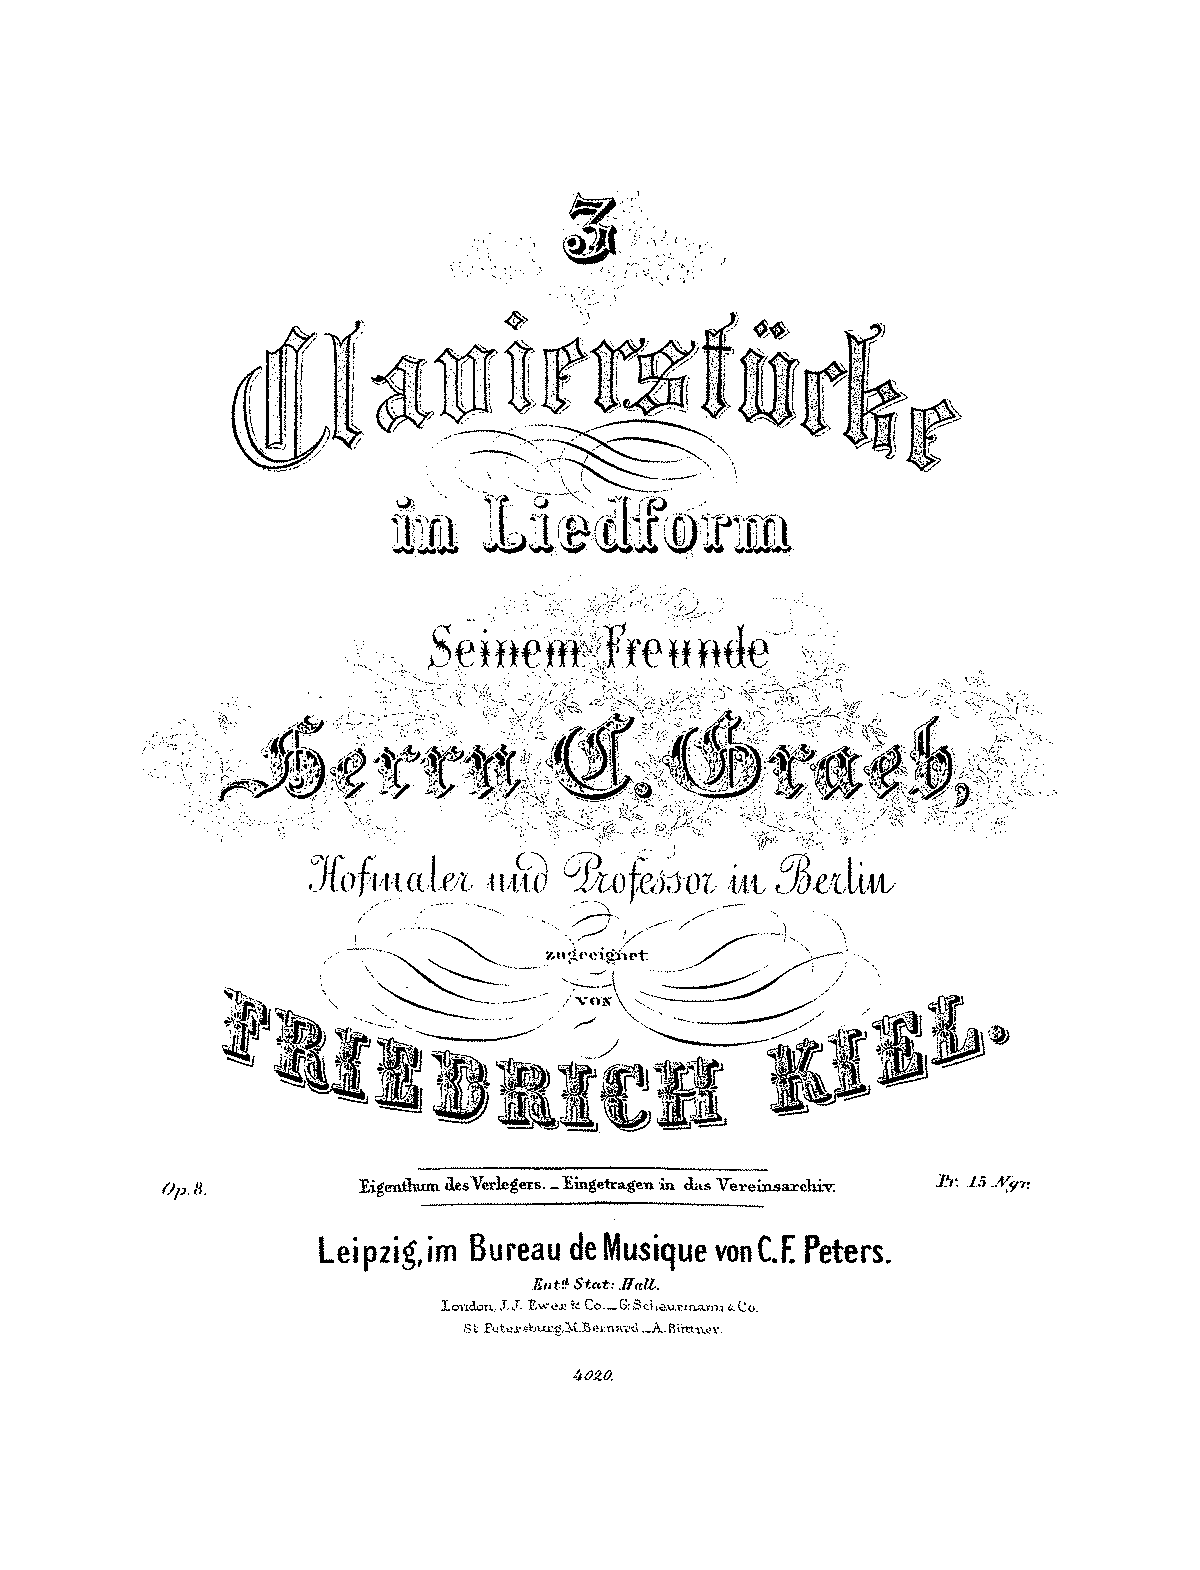 3 Clavierstücke in Liedform, Op.8 (Kiel, Friedrich) - IMSLP